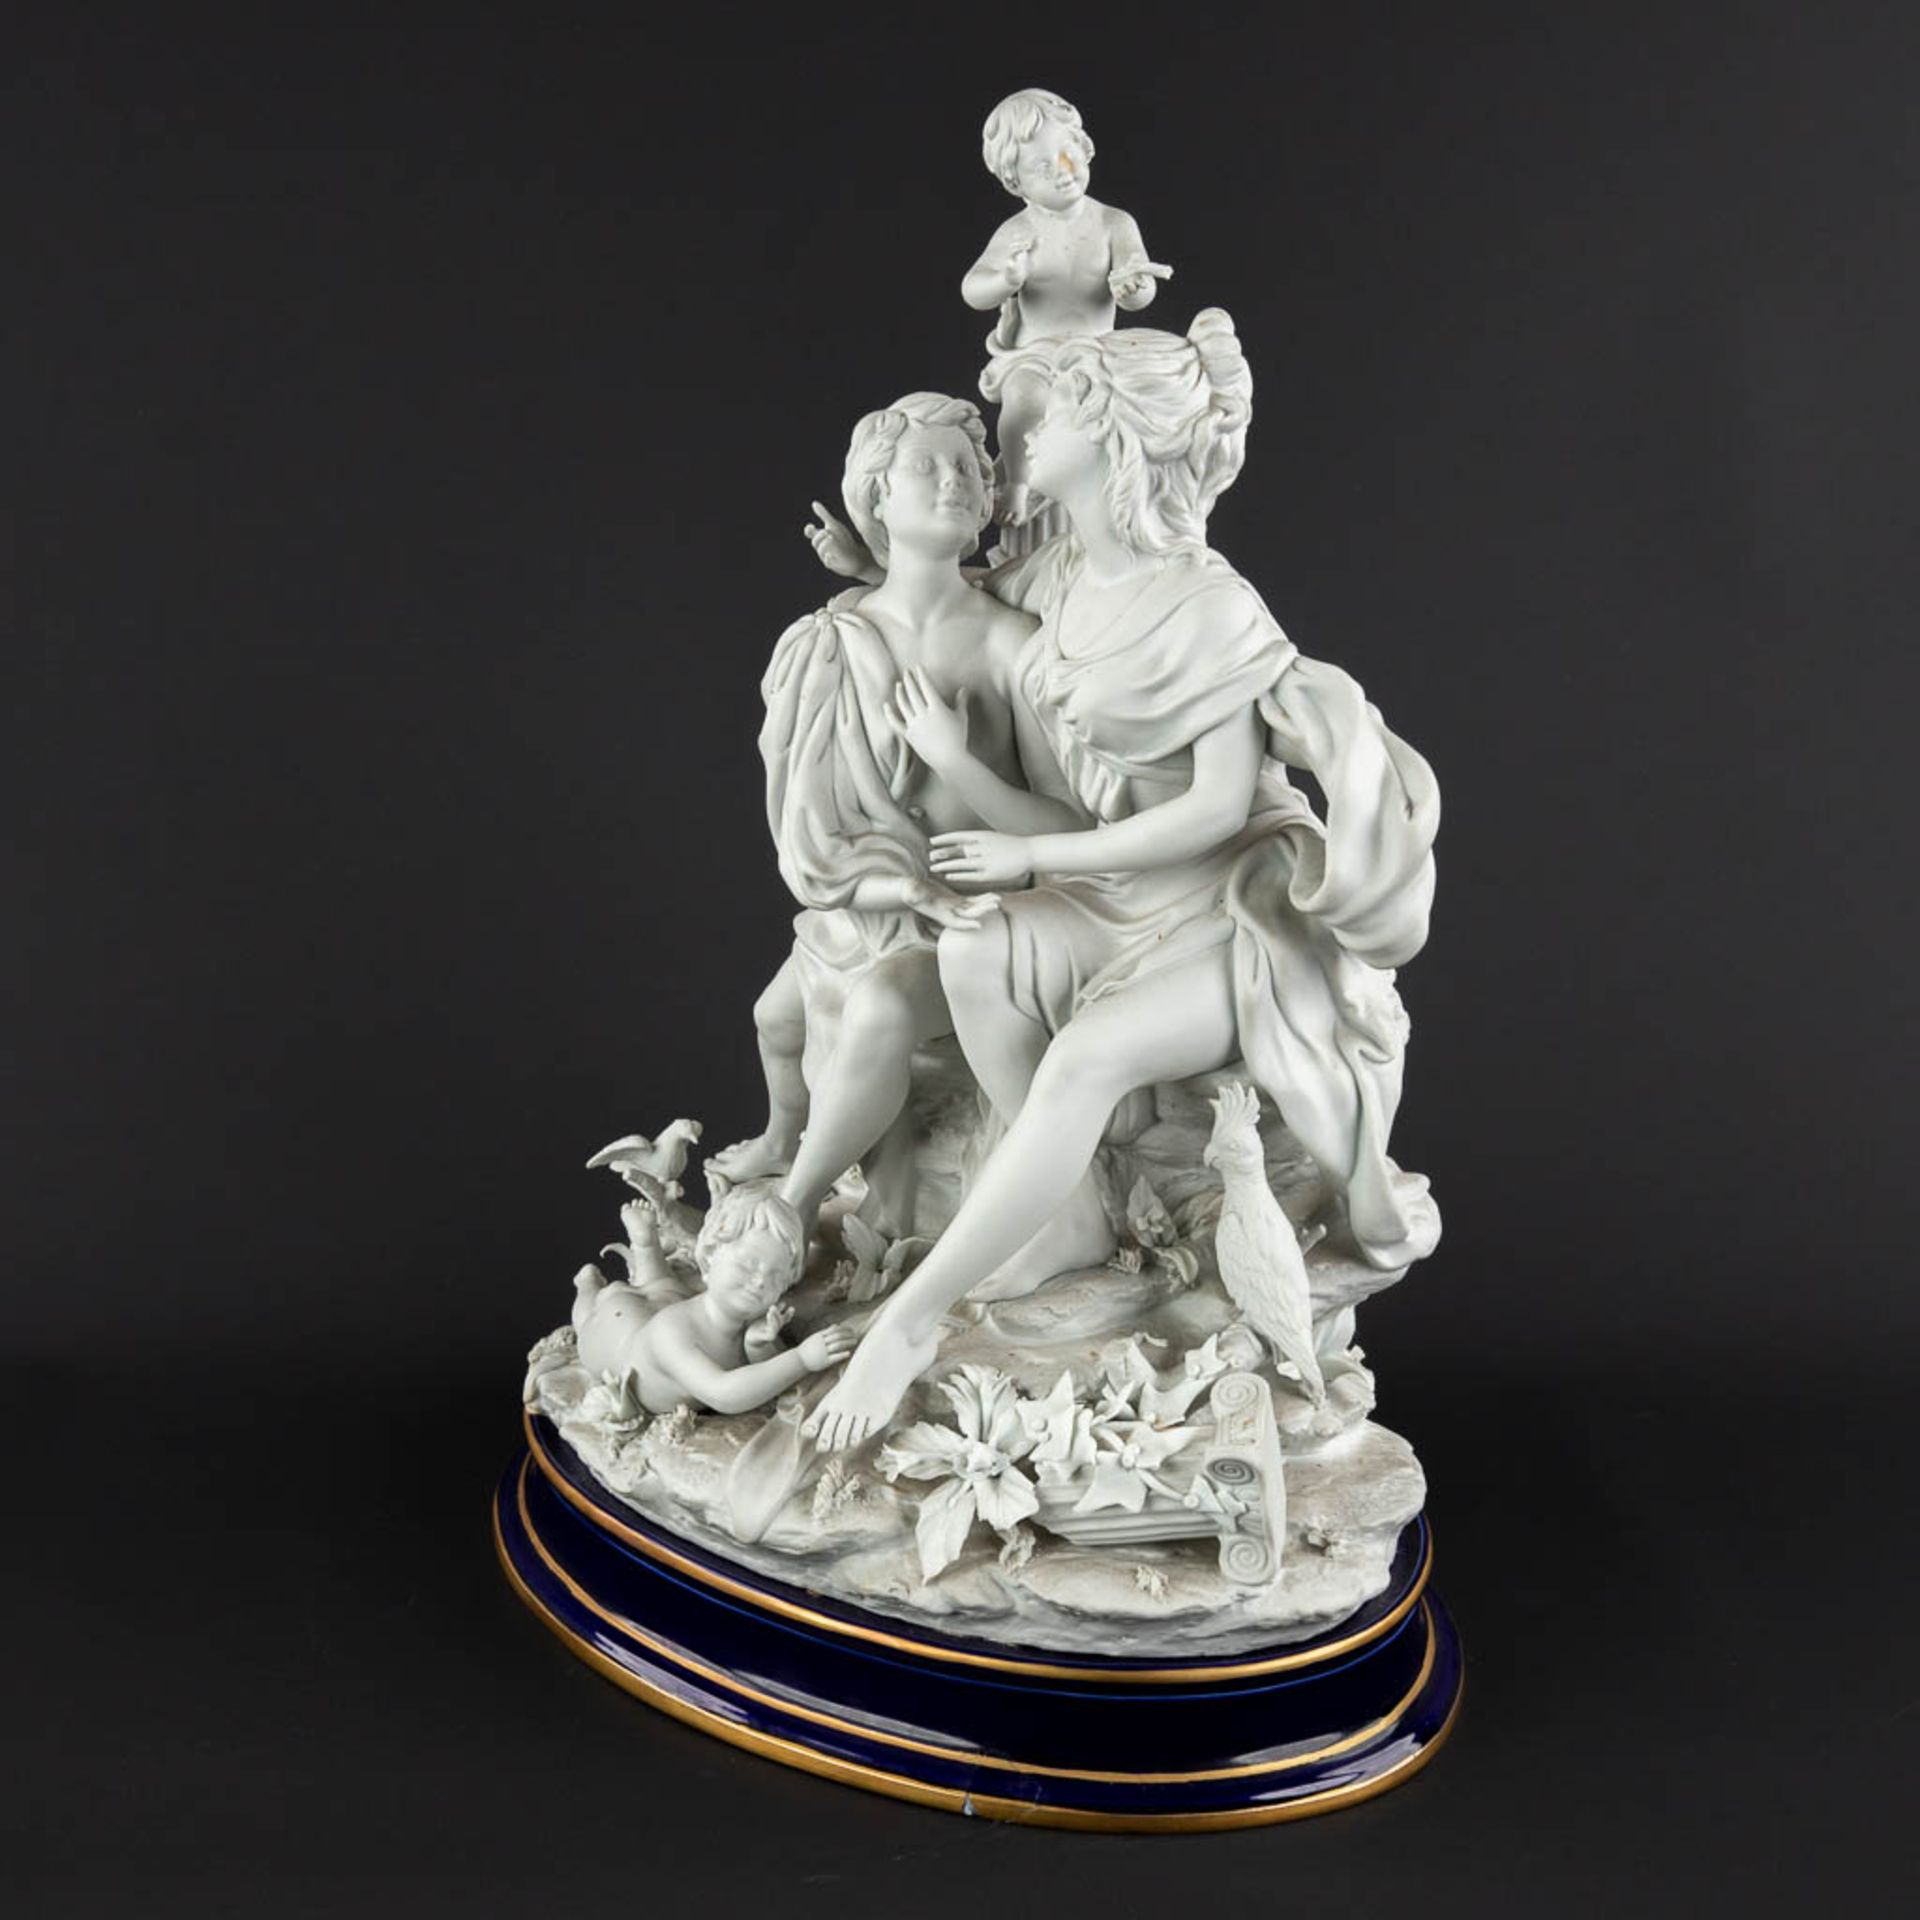 A large group, bisque porcelain with a romantic scène. 20th C. (D:26 x W:36 x H:47 cm) - Image 7 of 18